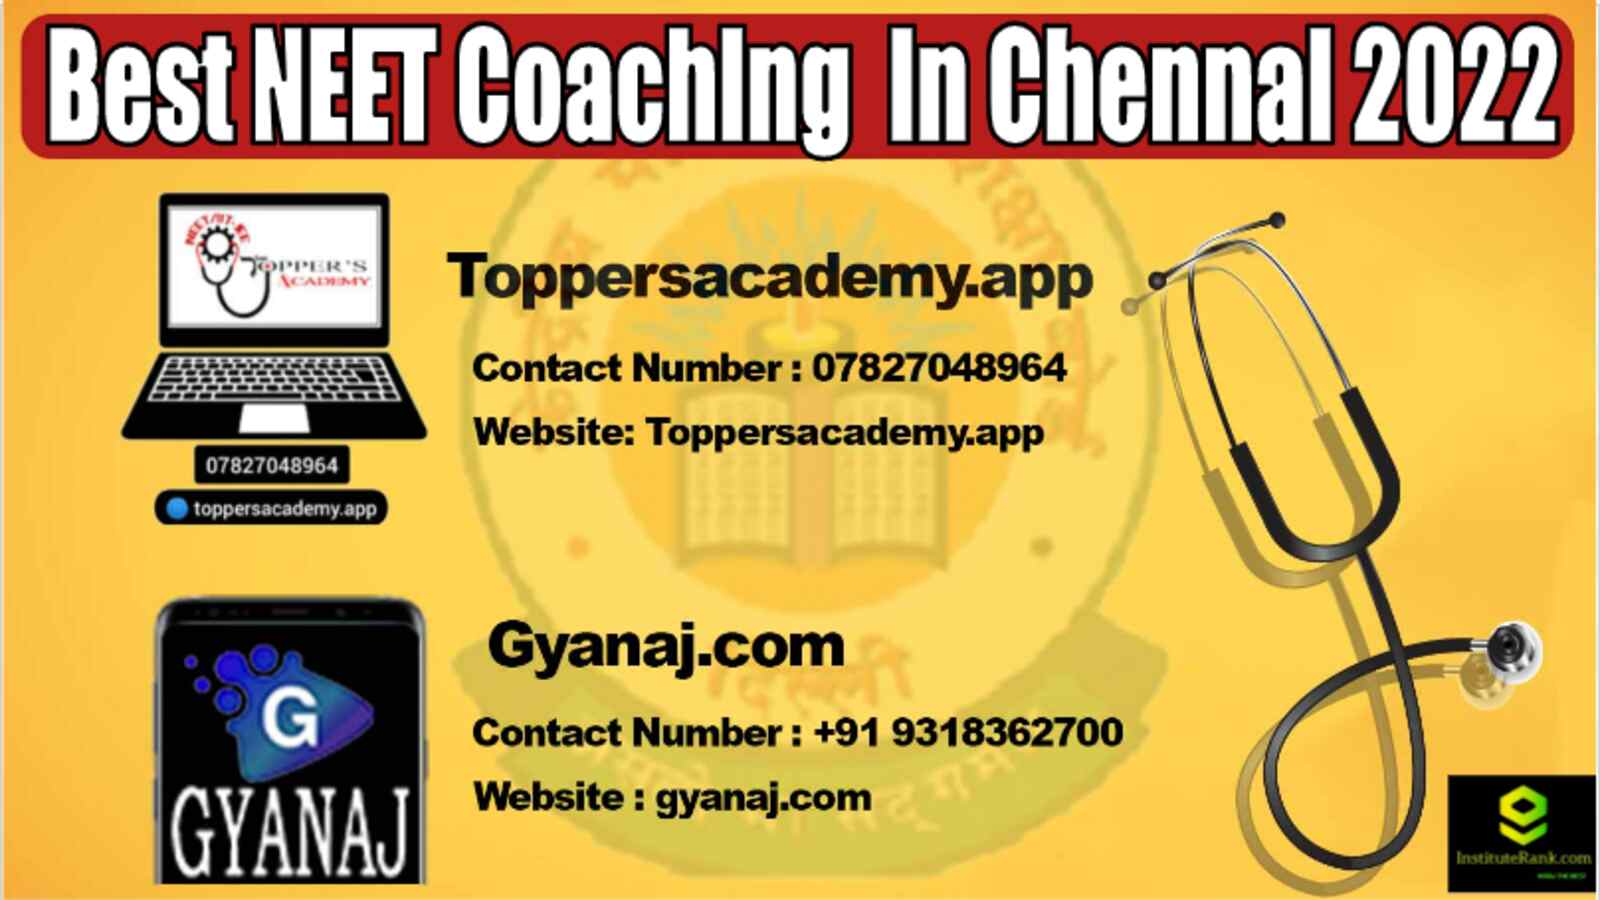 Best NEET coaching in Chennai 2022